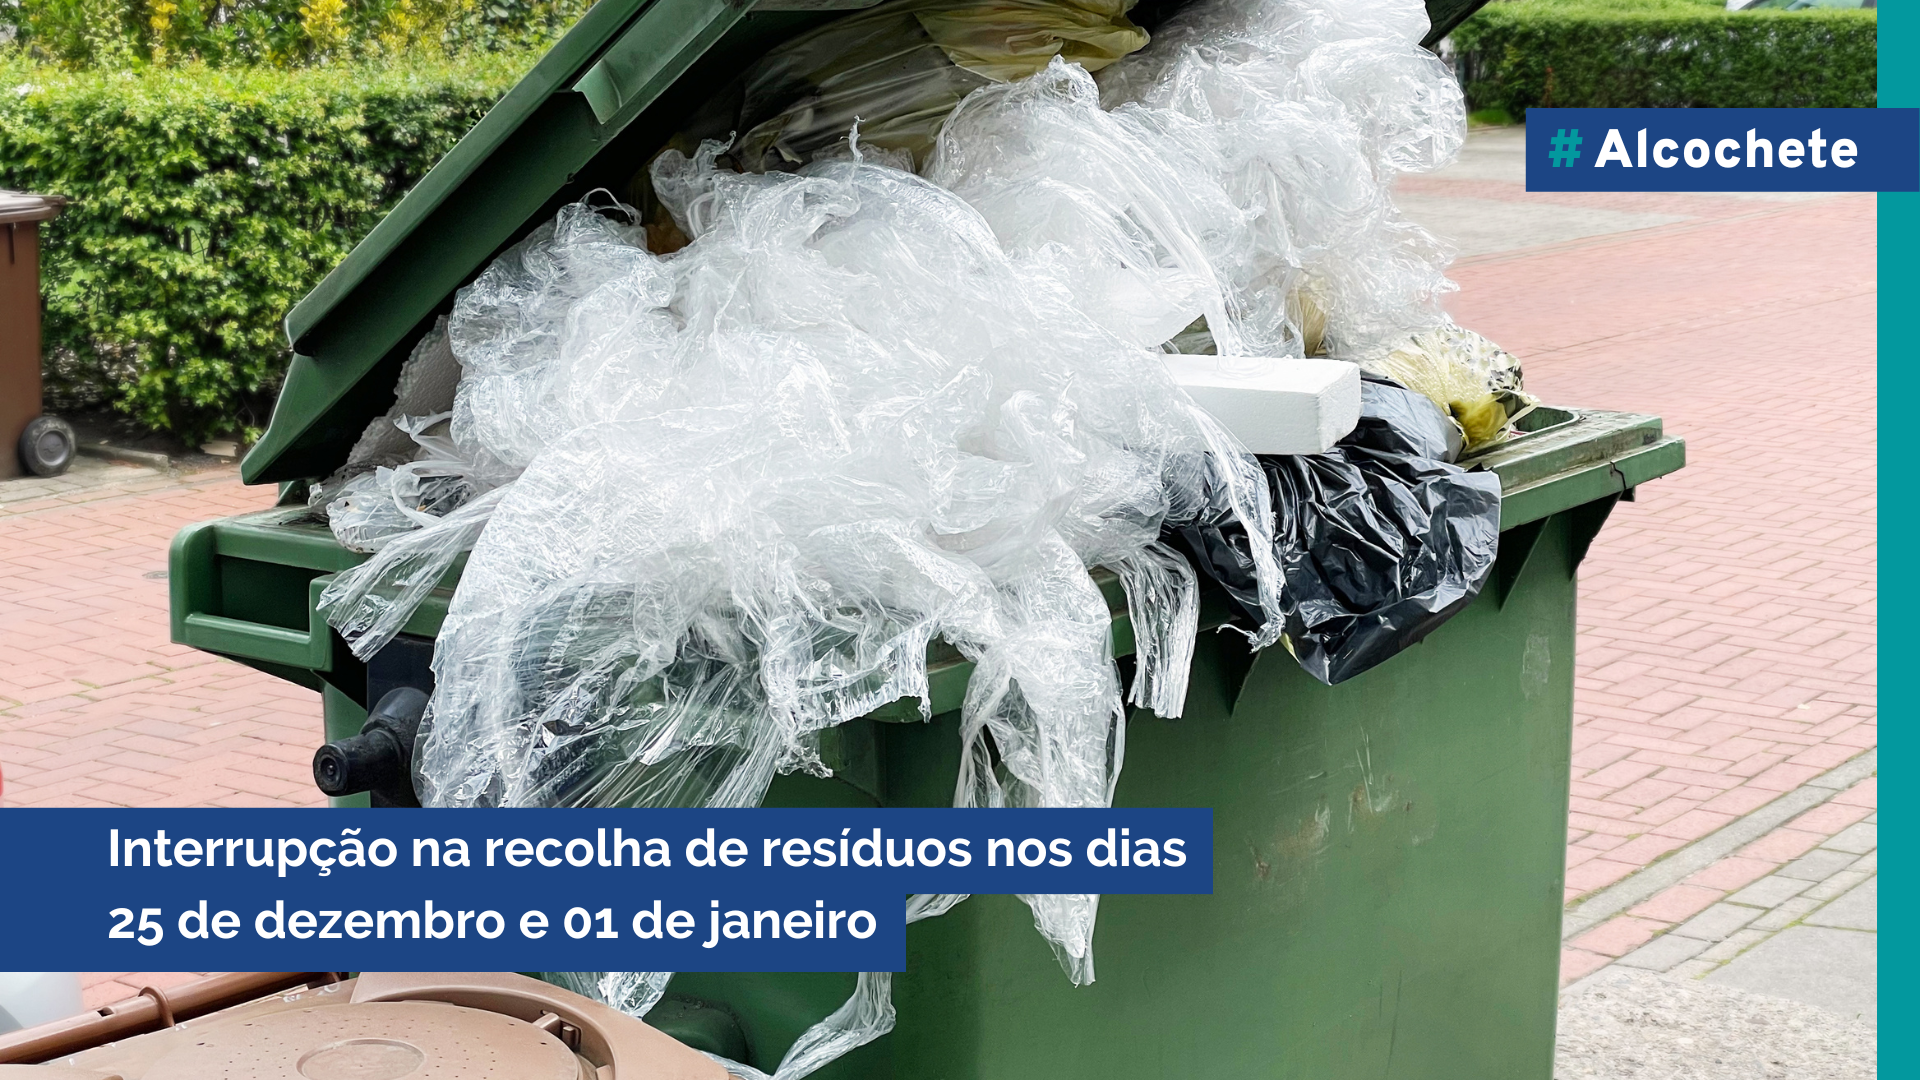 Interrupção de recolha de resíduos nos dias 25 de dezembro e 01 de janeiro